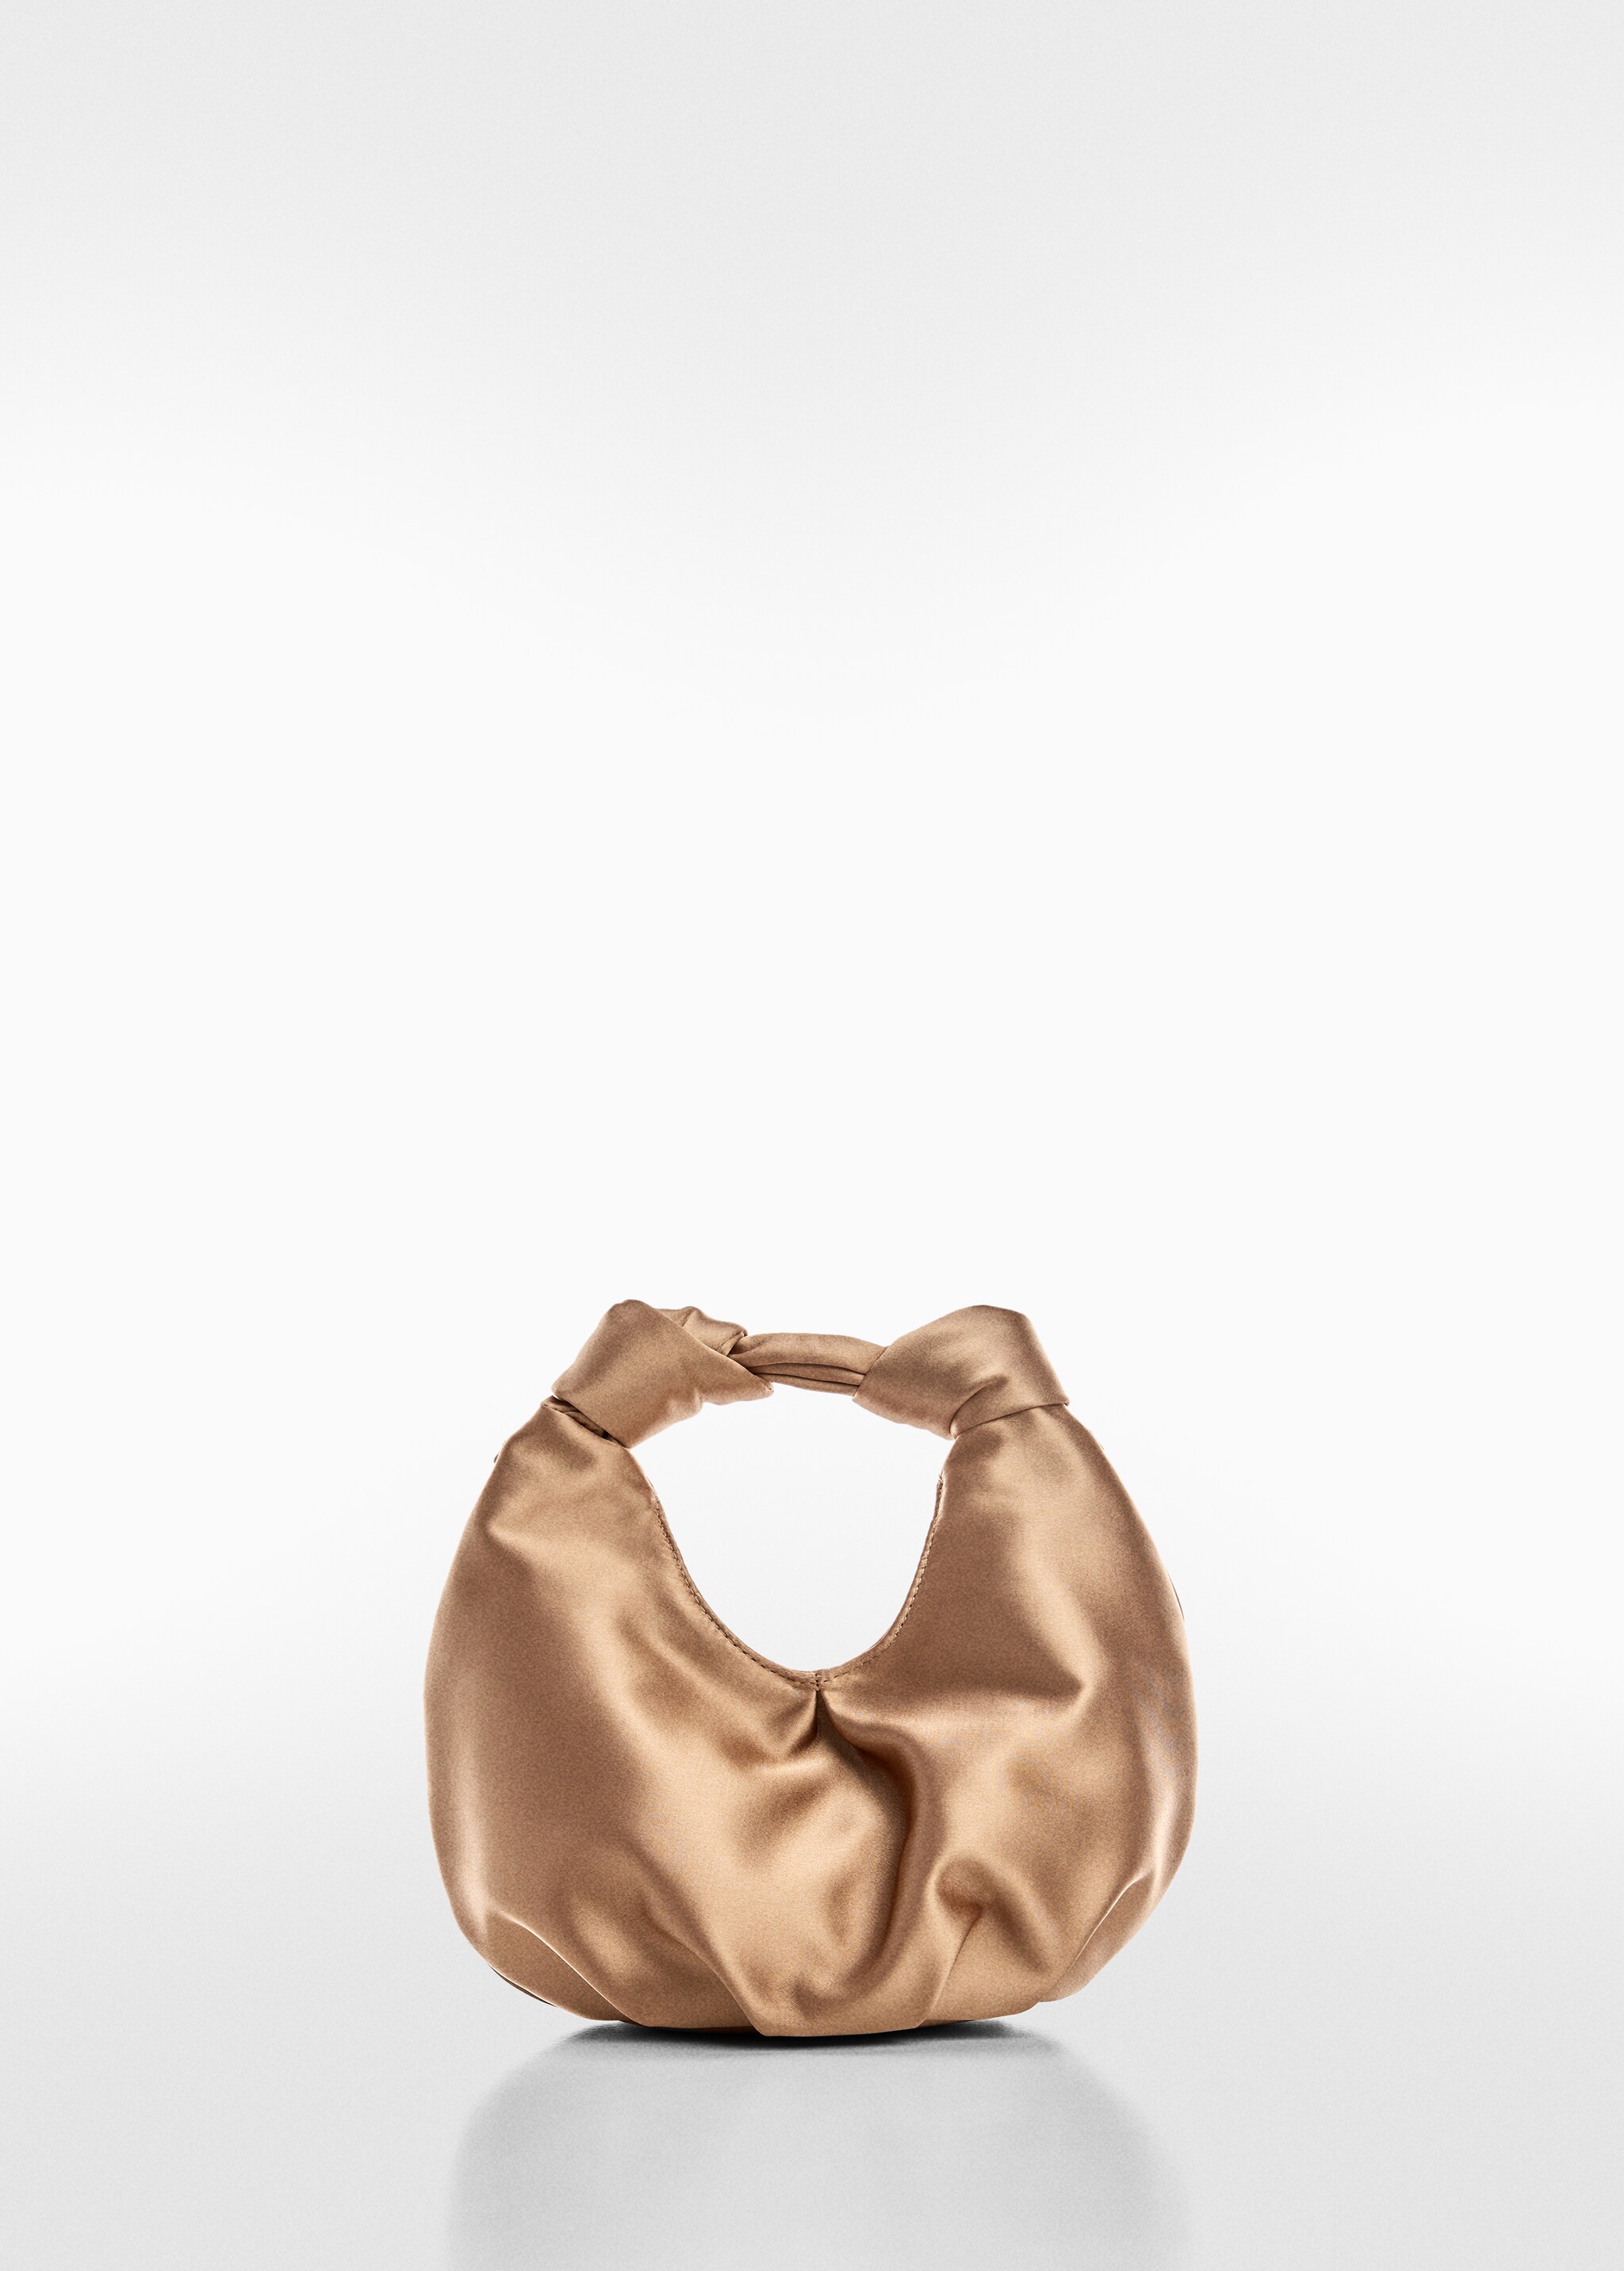 Атласная сумка для ношения в руке - Изделие без модели